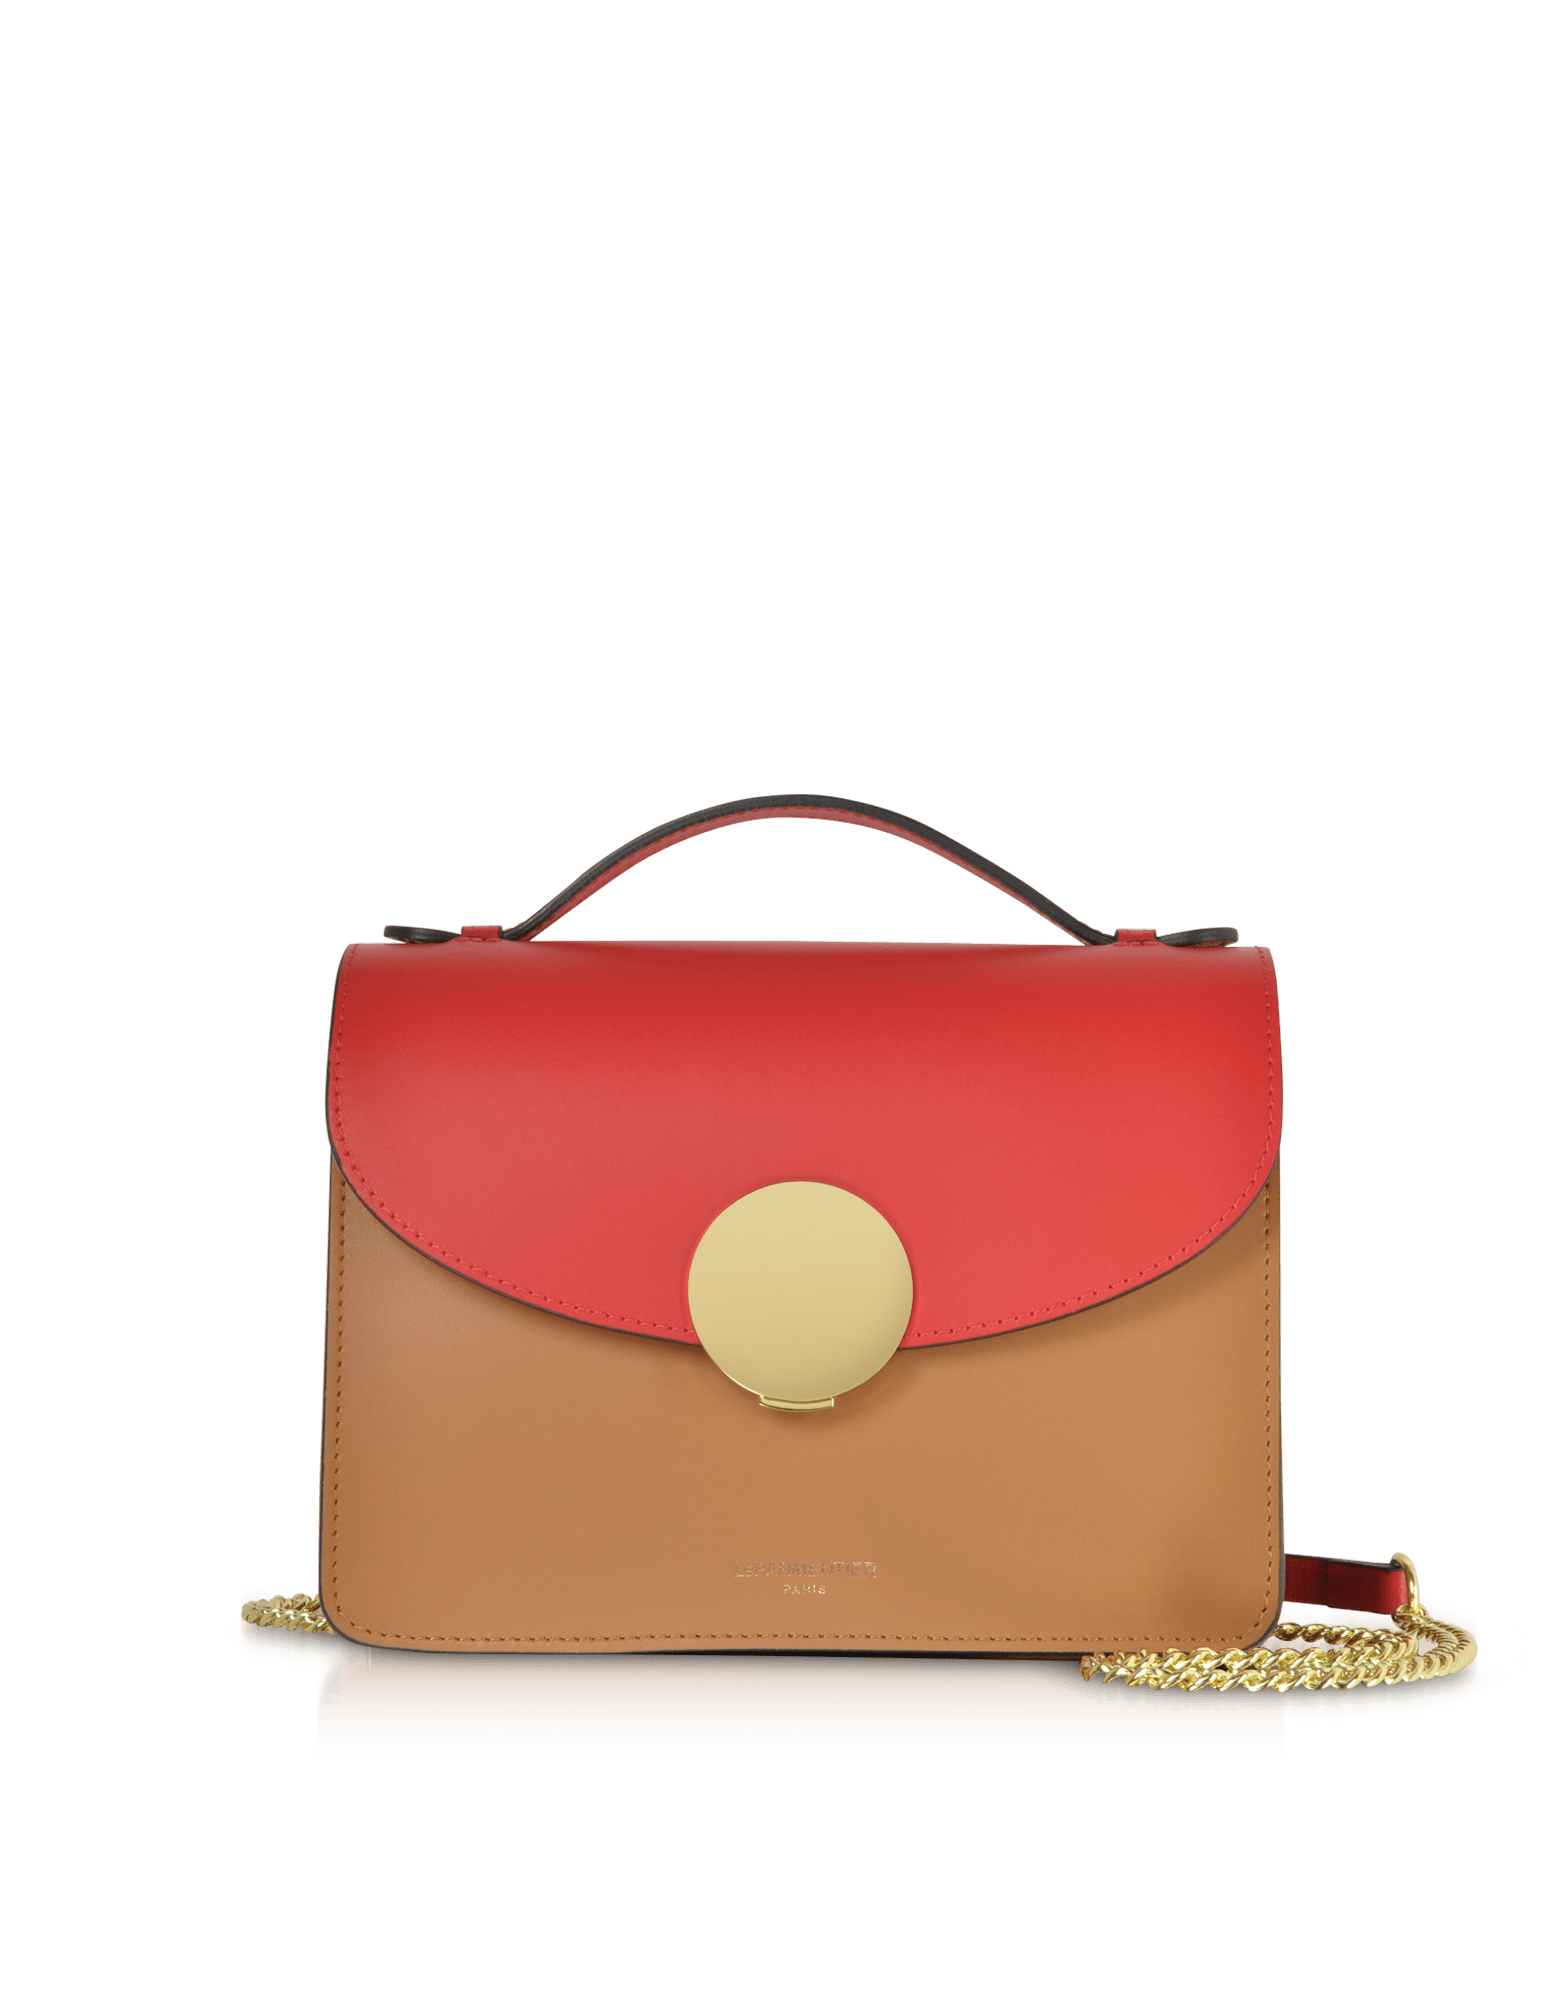 Le Parmentier Women's New Ondina Color Block Flap Top Leather Satchel Bag In Neutral